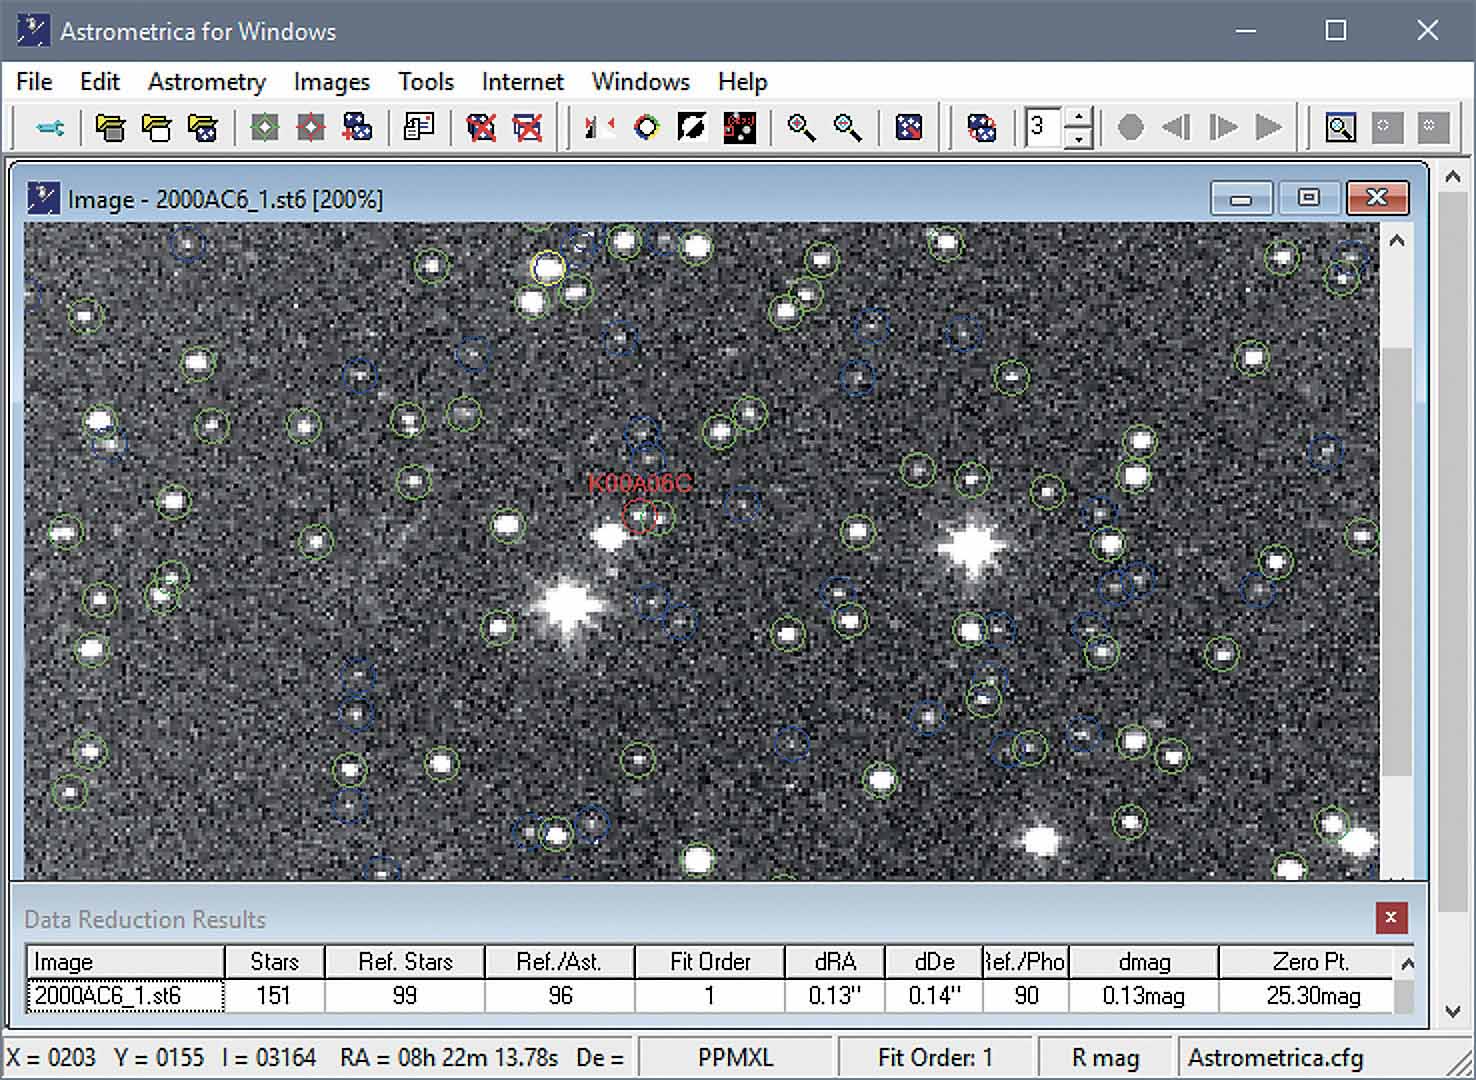 Graficzny interfejs użytkownika programu Astrometrica z pomyślnie rozpoznanym polem gwiazdowym. M. Weigand